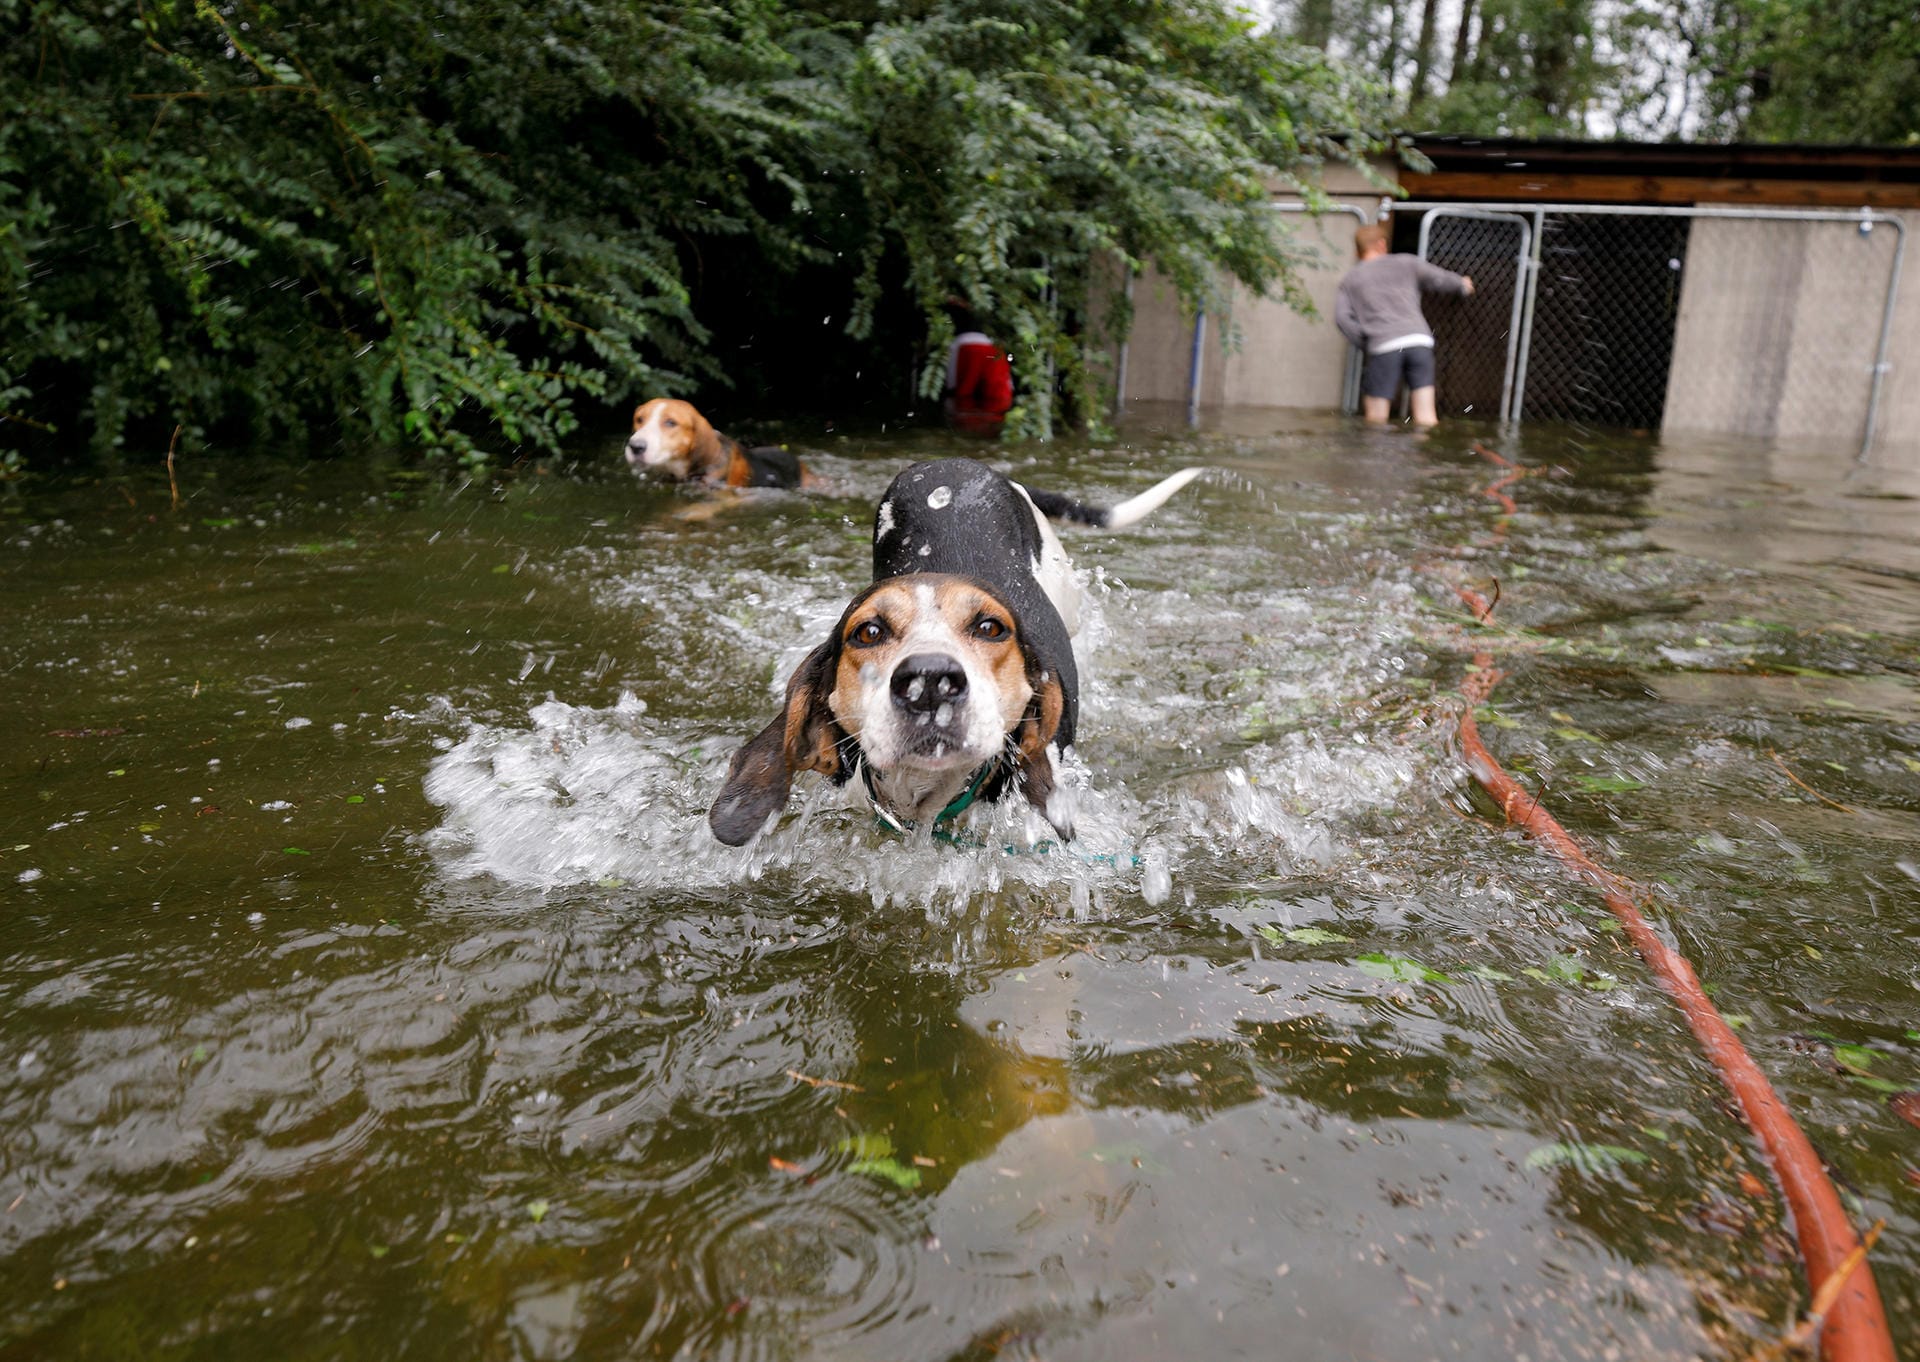 Leland, North Carolina: Hunde schwimmen hektisch durchs Wasser, nachdem sie aus ihrem Zwinger befreit wurden.